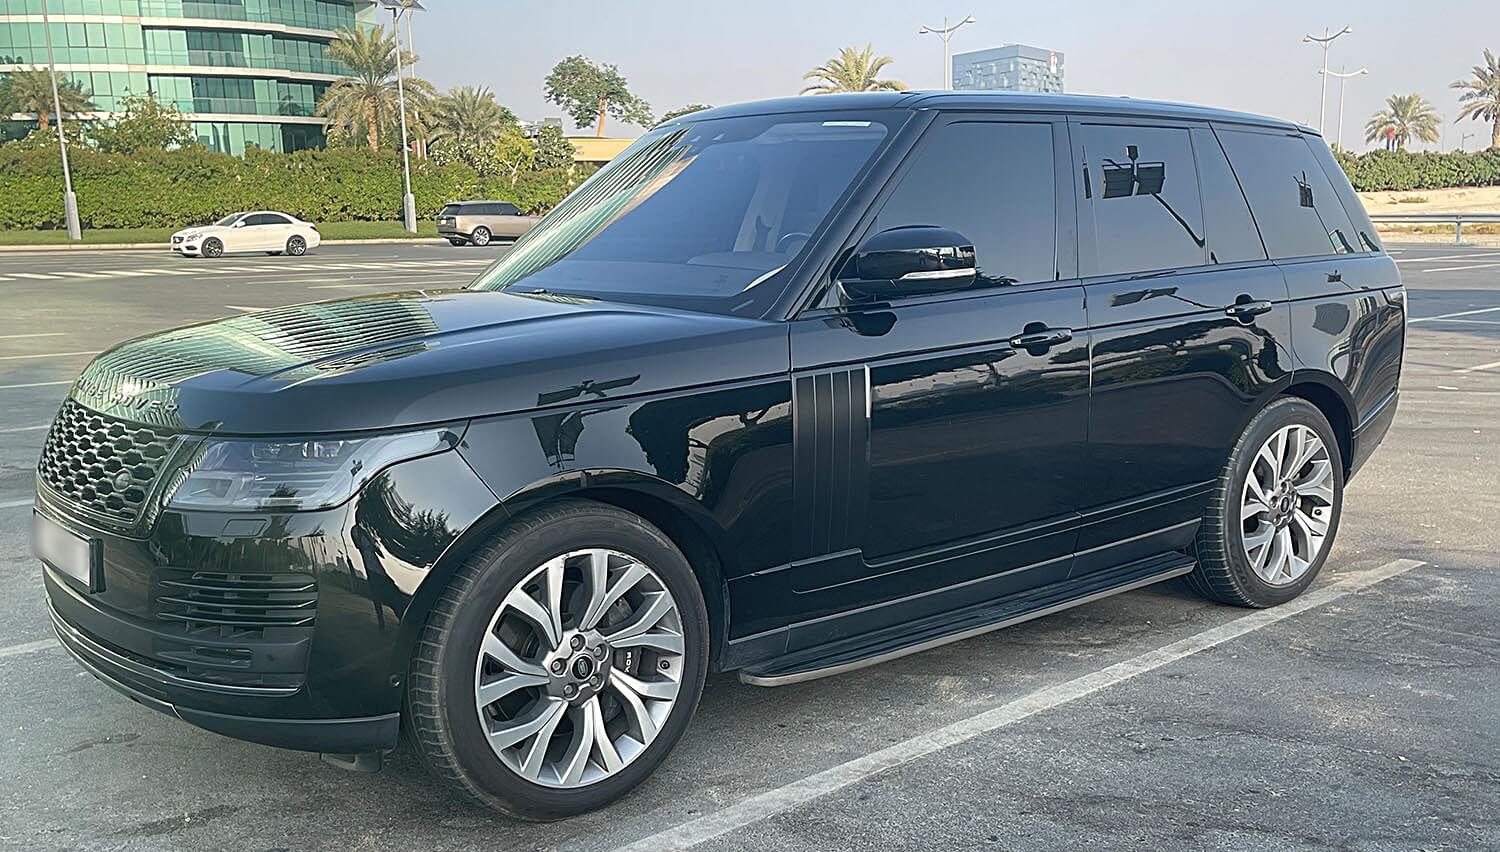 Land Rover Vogue Rental Dubai